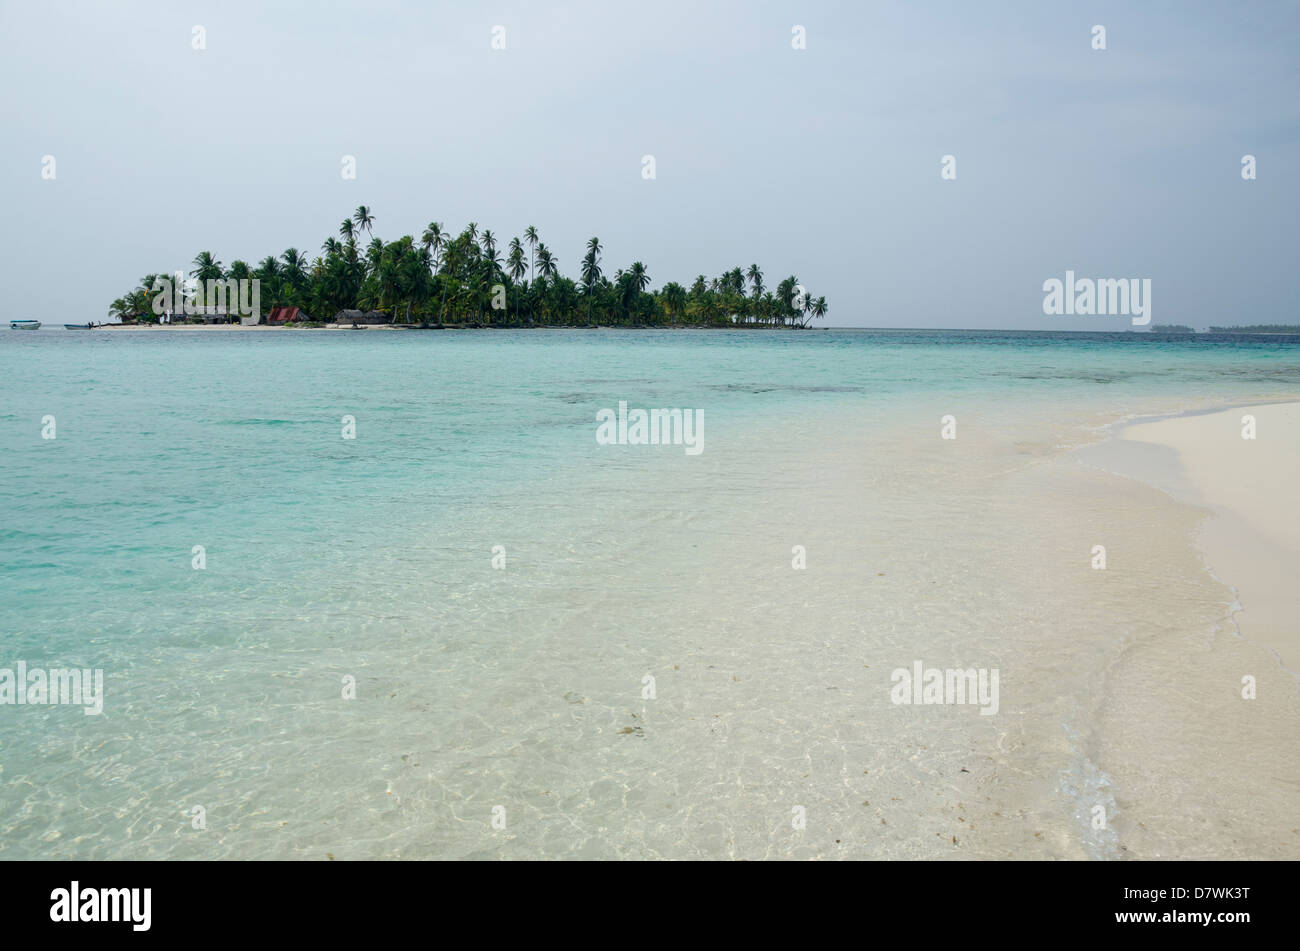 Islas distantes y playa, las Islas de San Blas Foto de stock